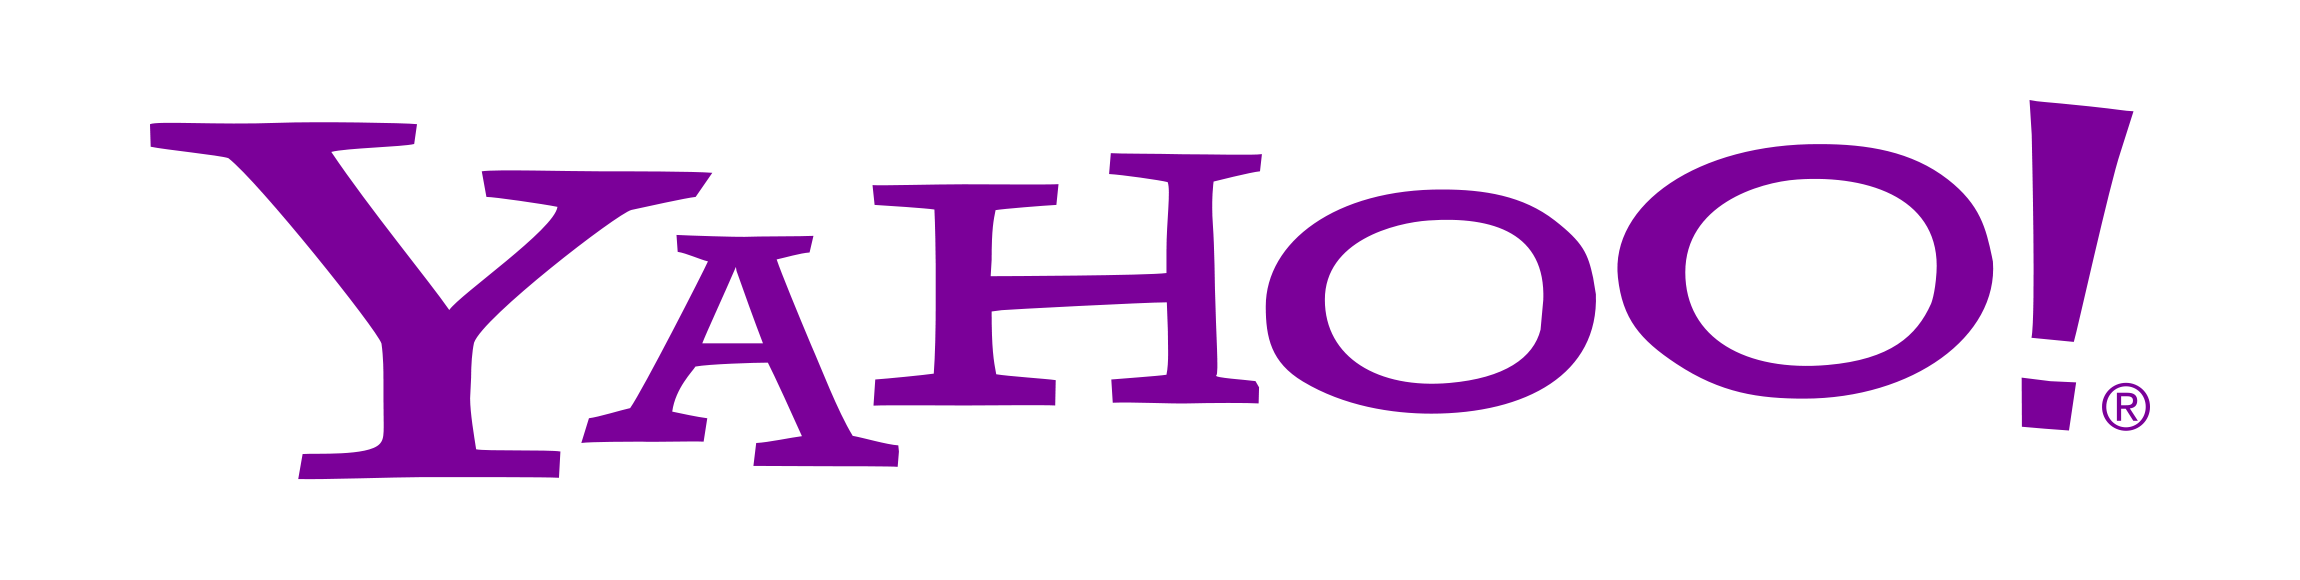 Yahoo.com Logo - Yahoo Logo, Yahoo Symbol, Meaning, History and Evolution